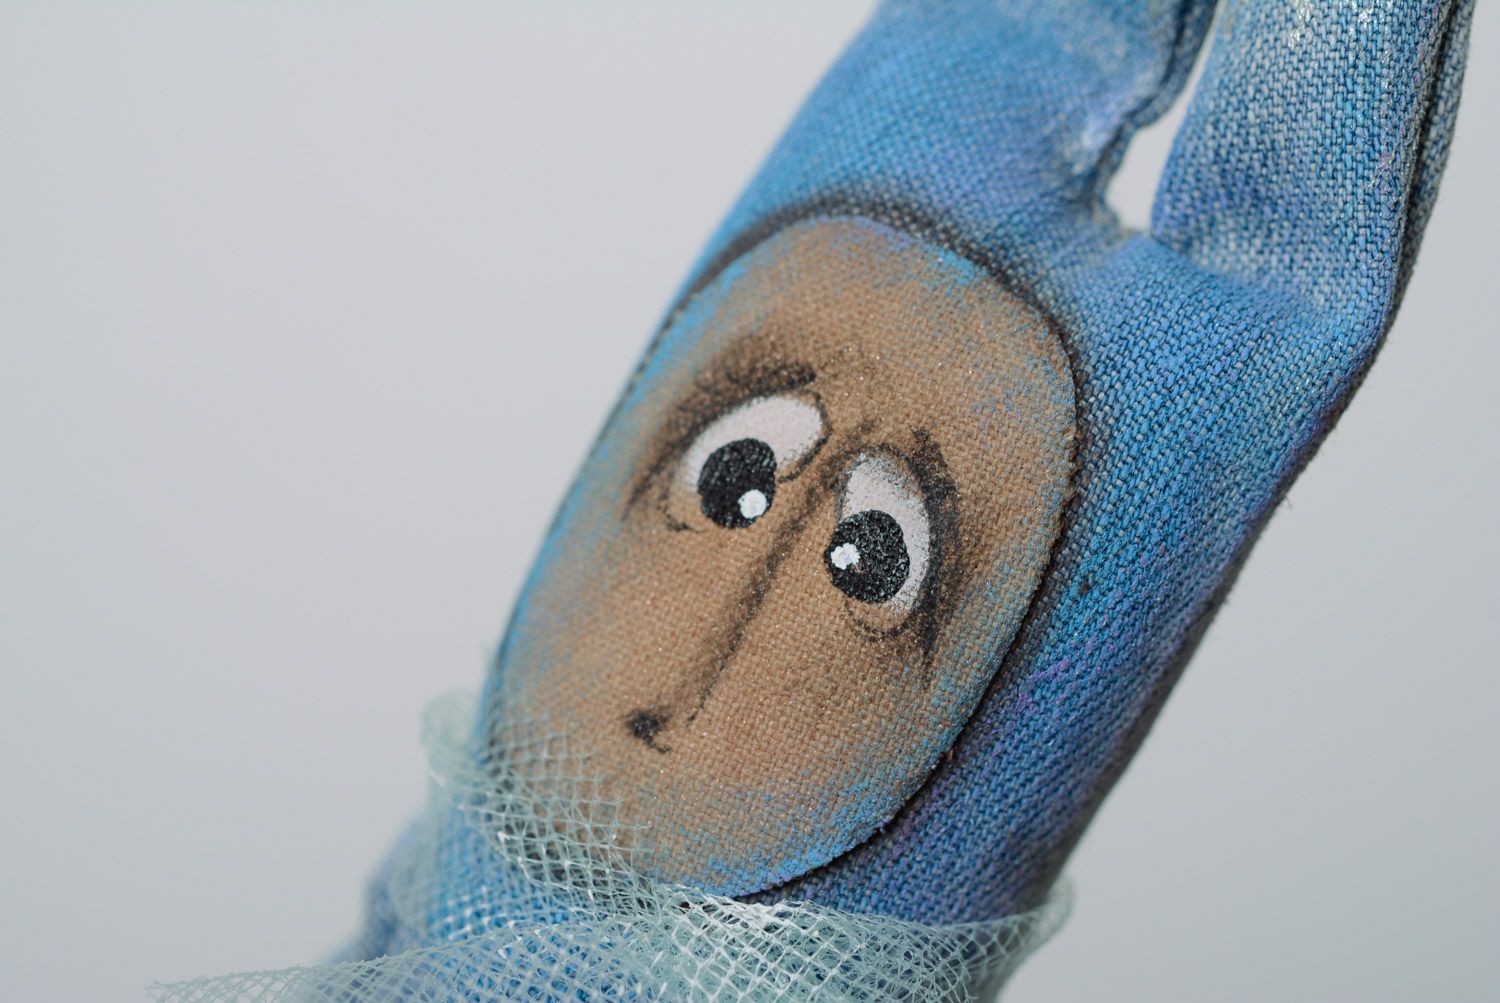 Petite peluche décorative en jean bleue peinte faite main hypoallergénique  photo 2